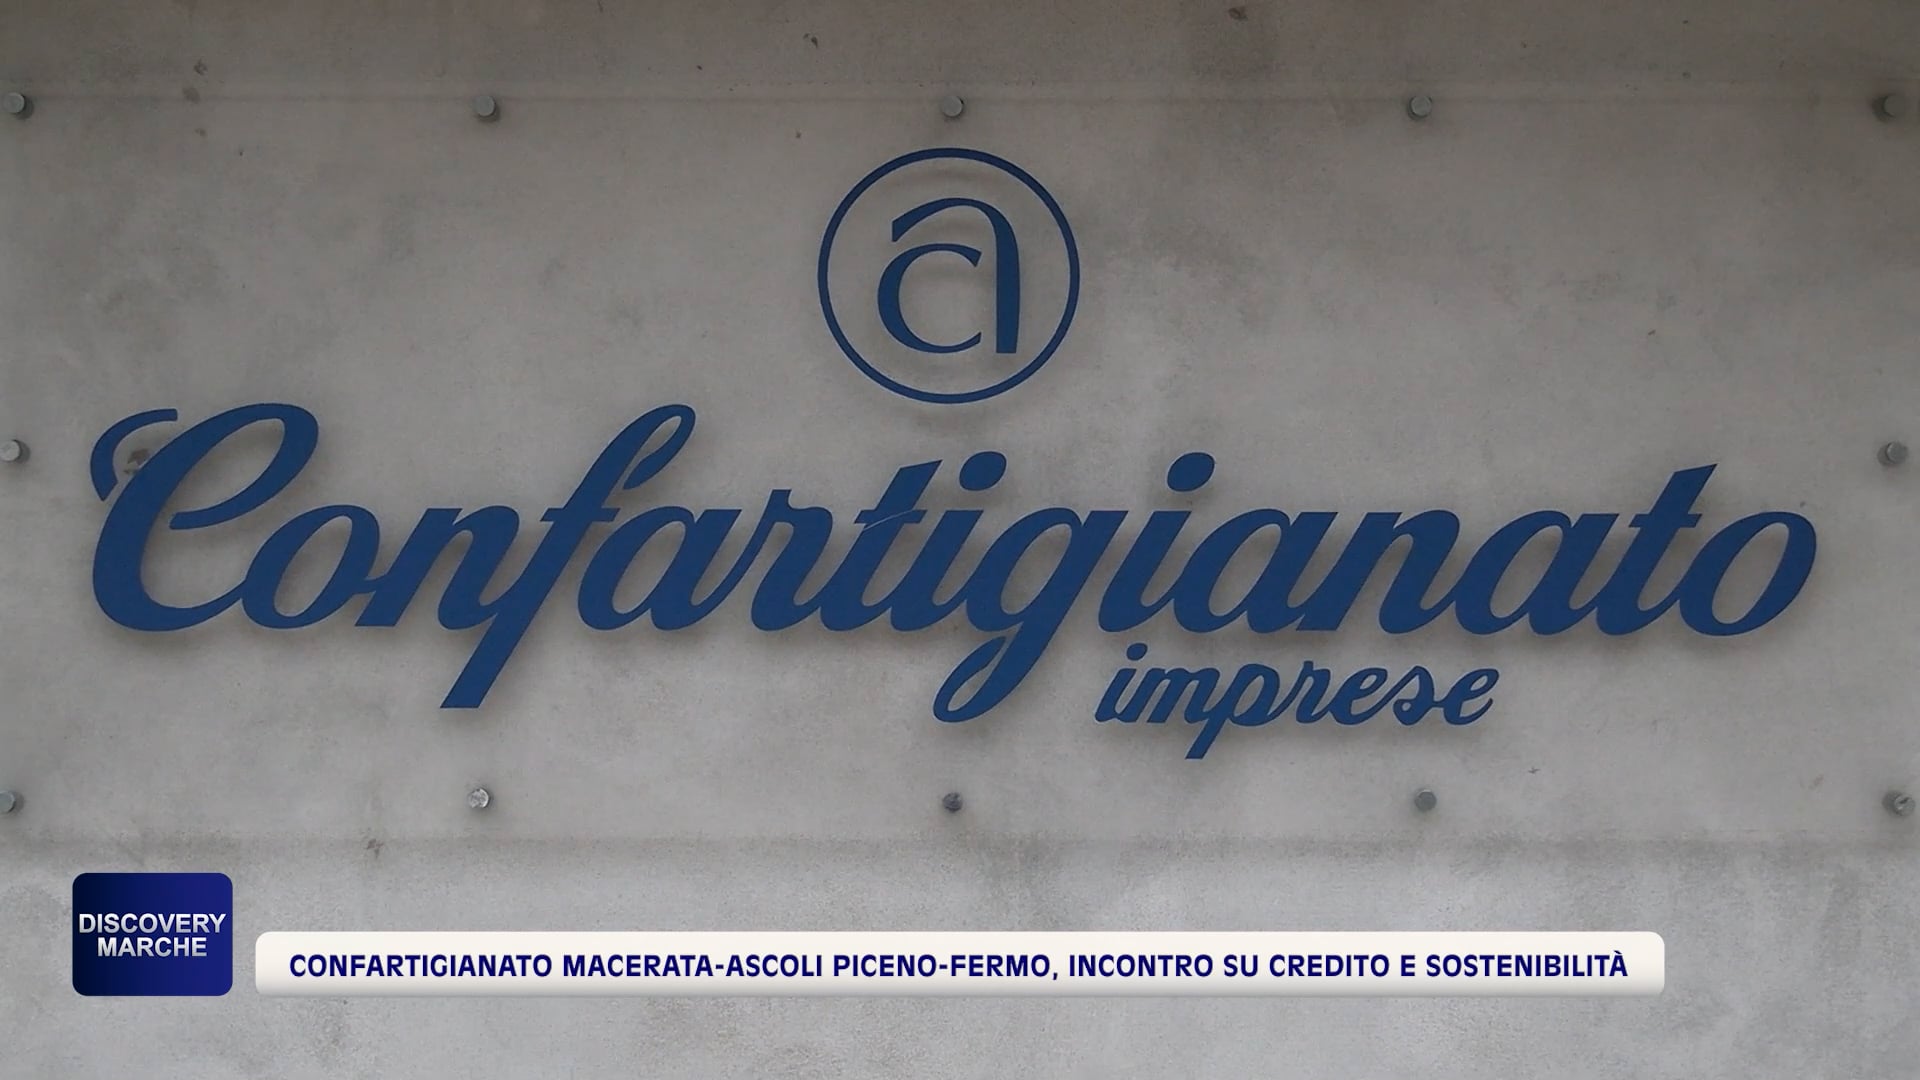 Confartigianato Macerata-Ascoli Piceno-Fermo, incontro su credito e sostenibilità - VIDEO